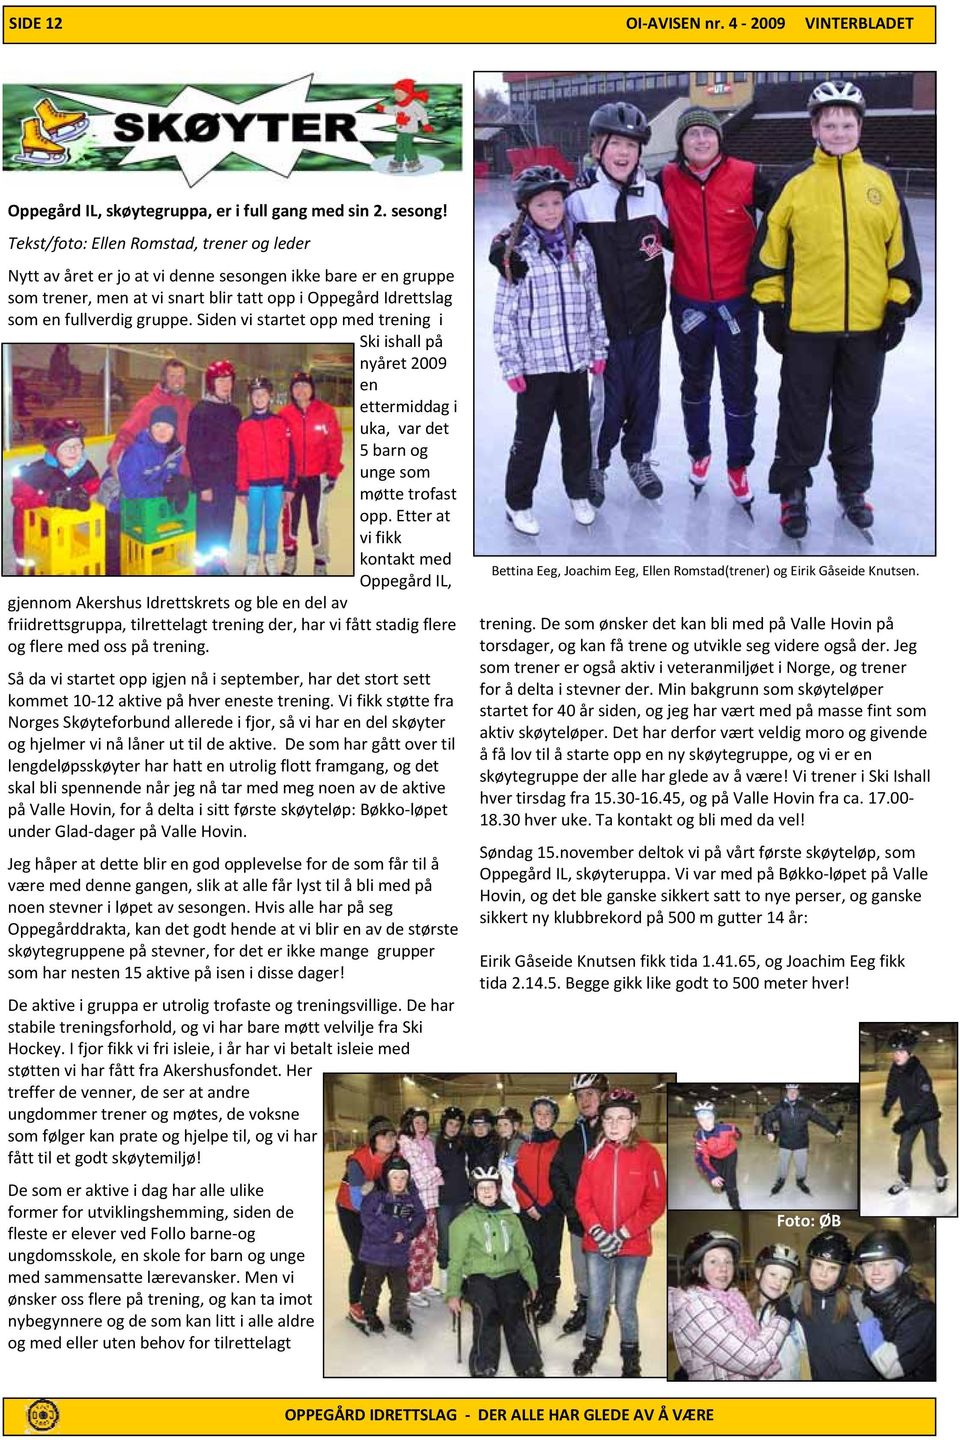 Siden vi startet opp med trening i Ski ishall på nyåret 2009 en ettermiddag i uka, var det 5 barn og unge som møtte trofast opp.